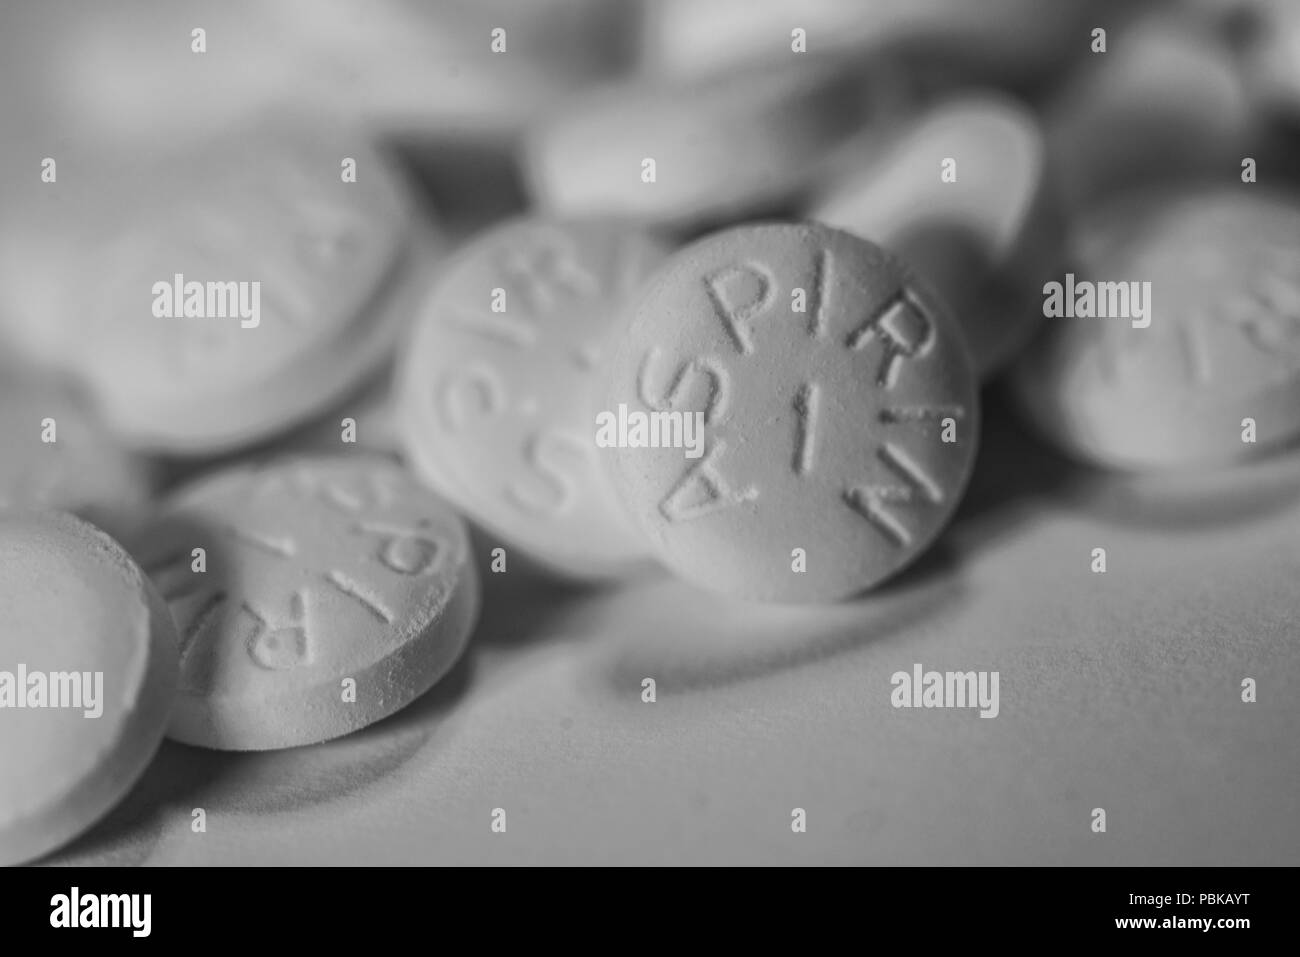 Aspirin tablet Banque d'images noir et blanc - Page 3 - Alamy